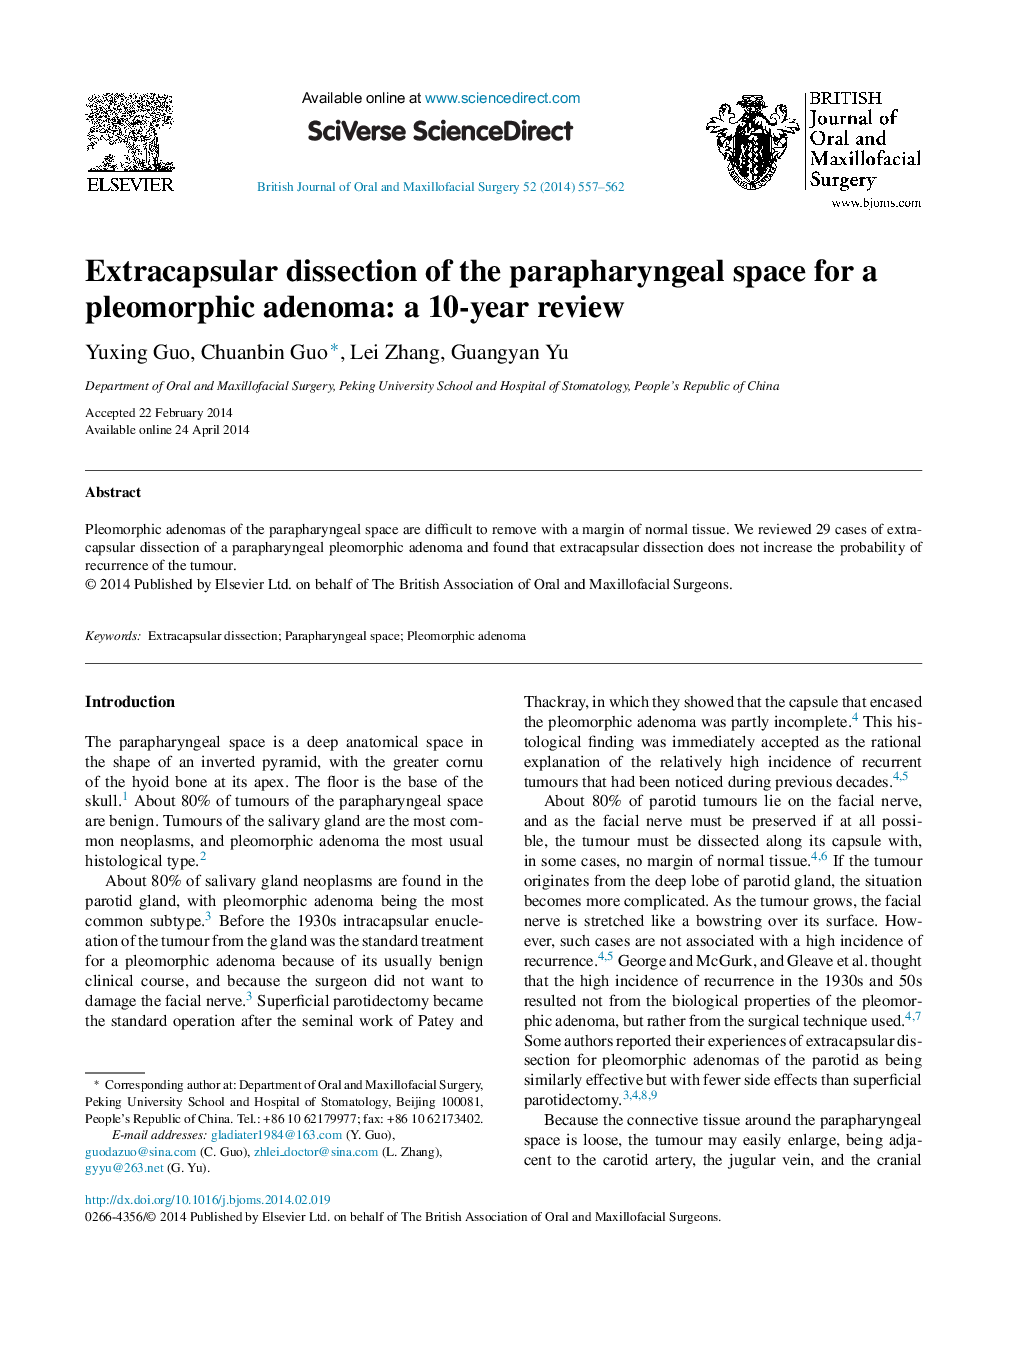 جداسازی غده فوق کلیوی از فضای پارافارینژال برای یک آدنوم پلومورفیک: بررسی 10 ساله 